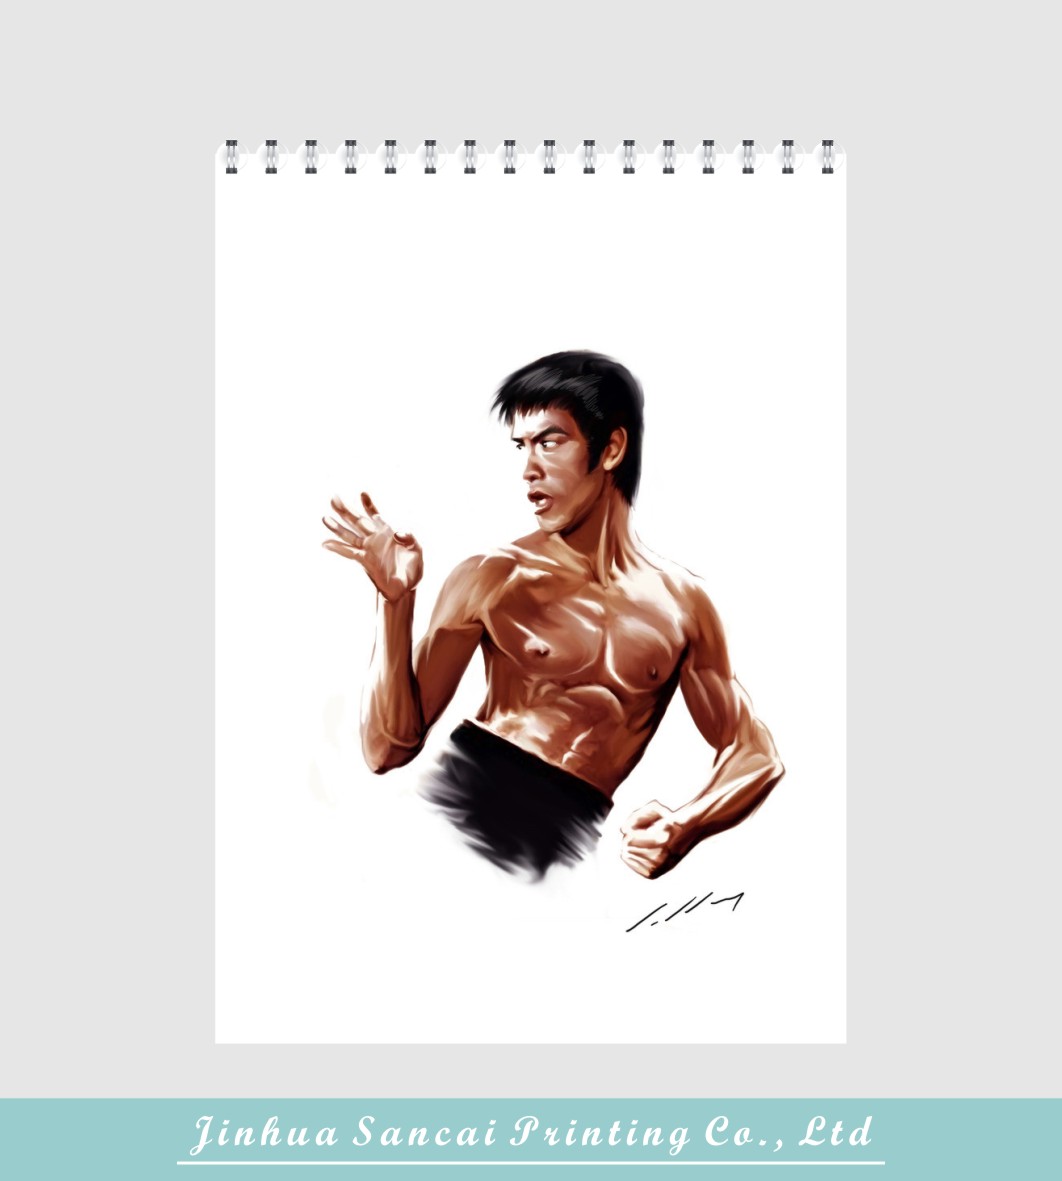 printed Bruce Lee cartoon book